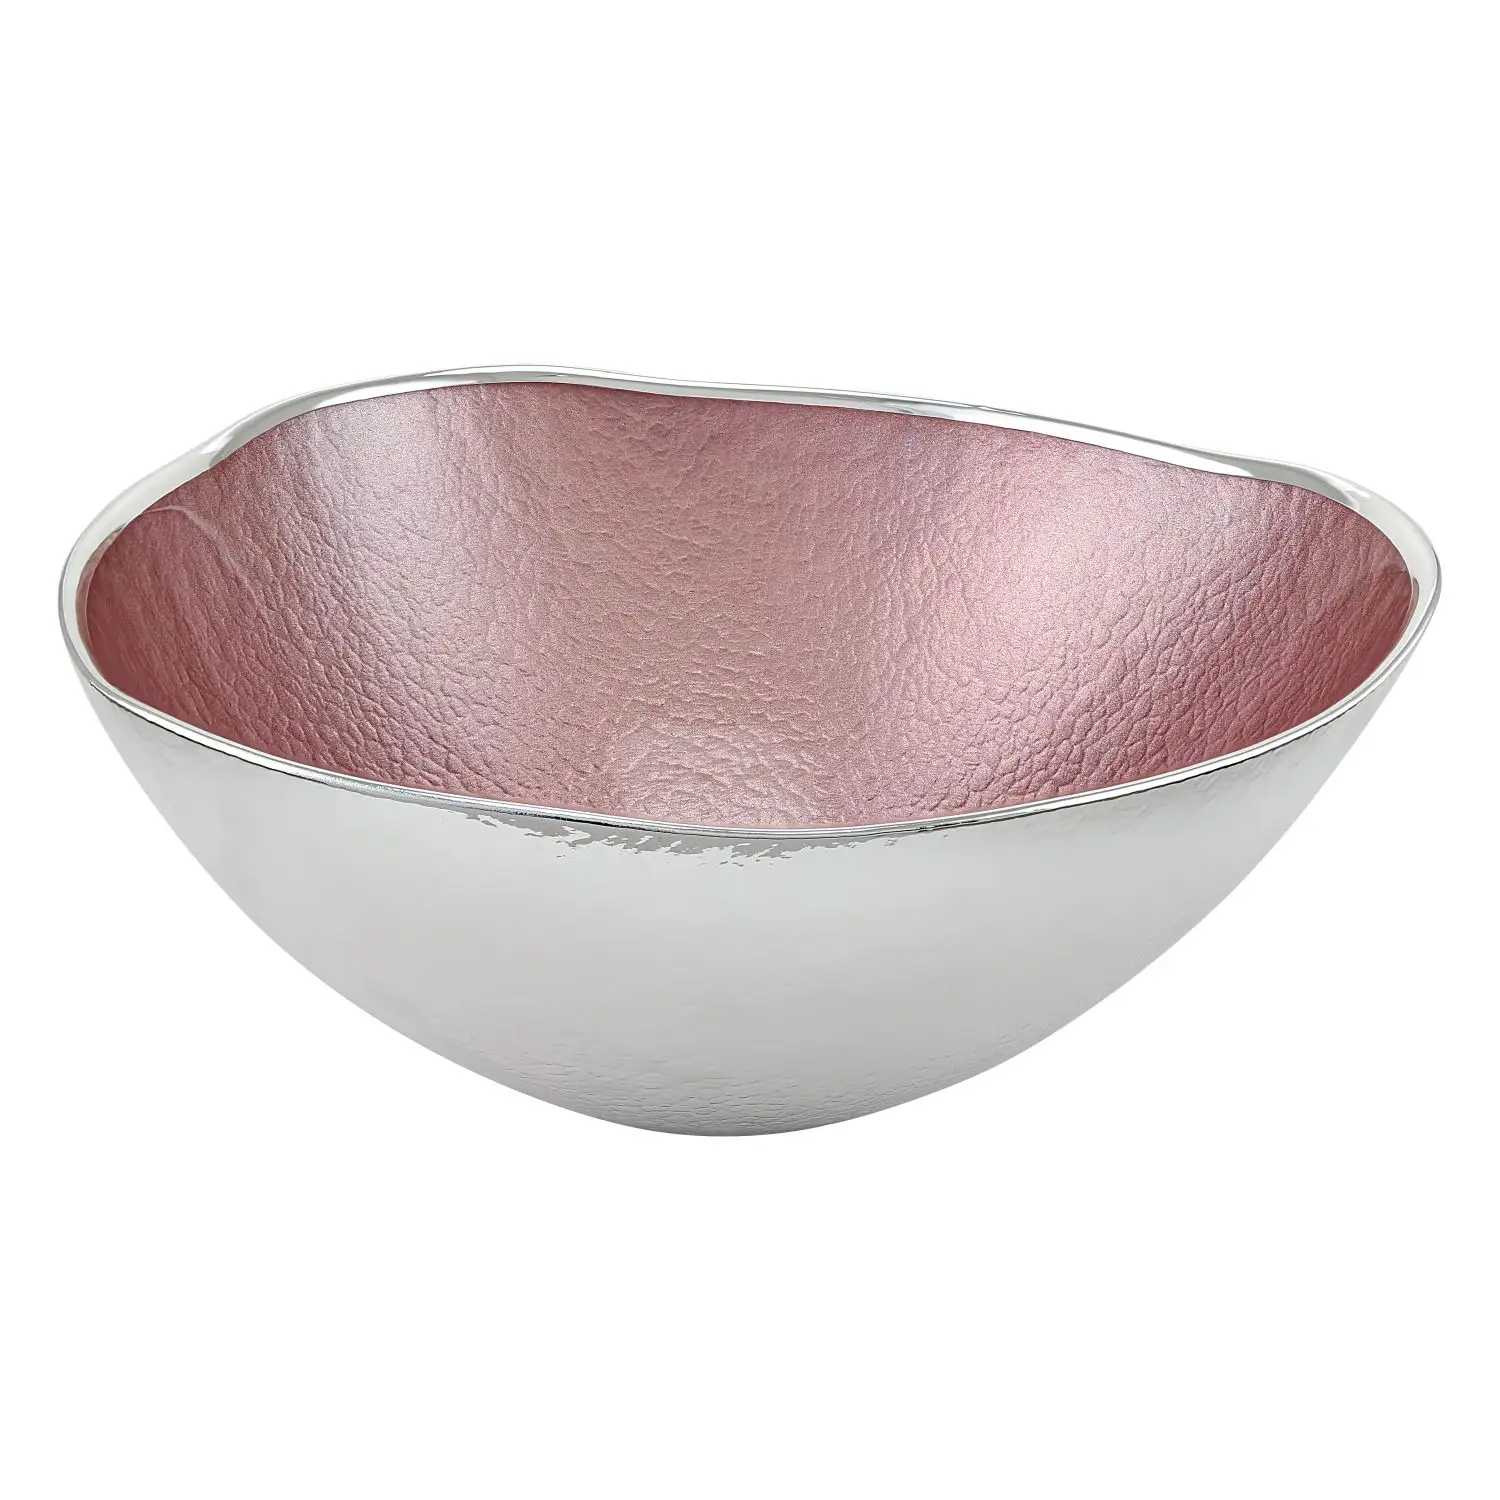 Чаша стеклянная UP (цвет бледно-розовый) диаметр 24 см, высота 10,5 см чаша стеклянная up цвет бледно розовый диаметр 30 см высота 12 см